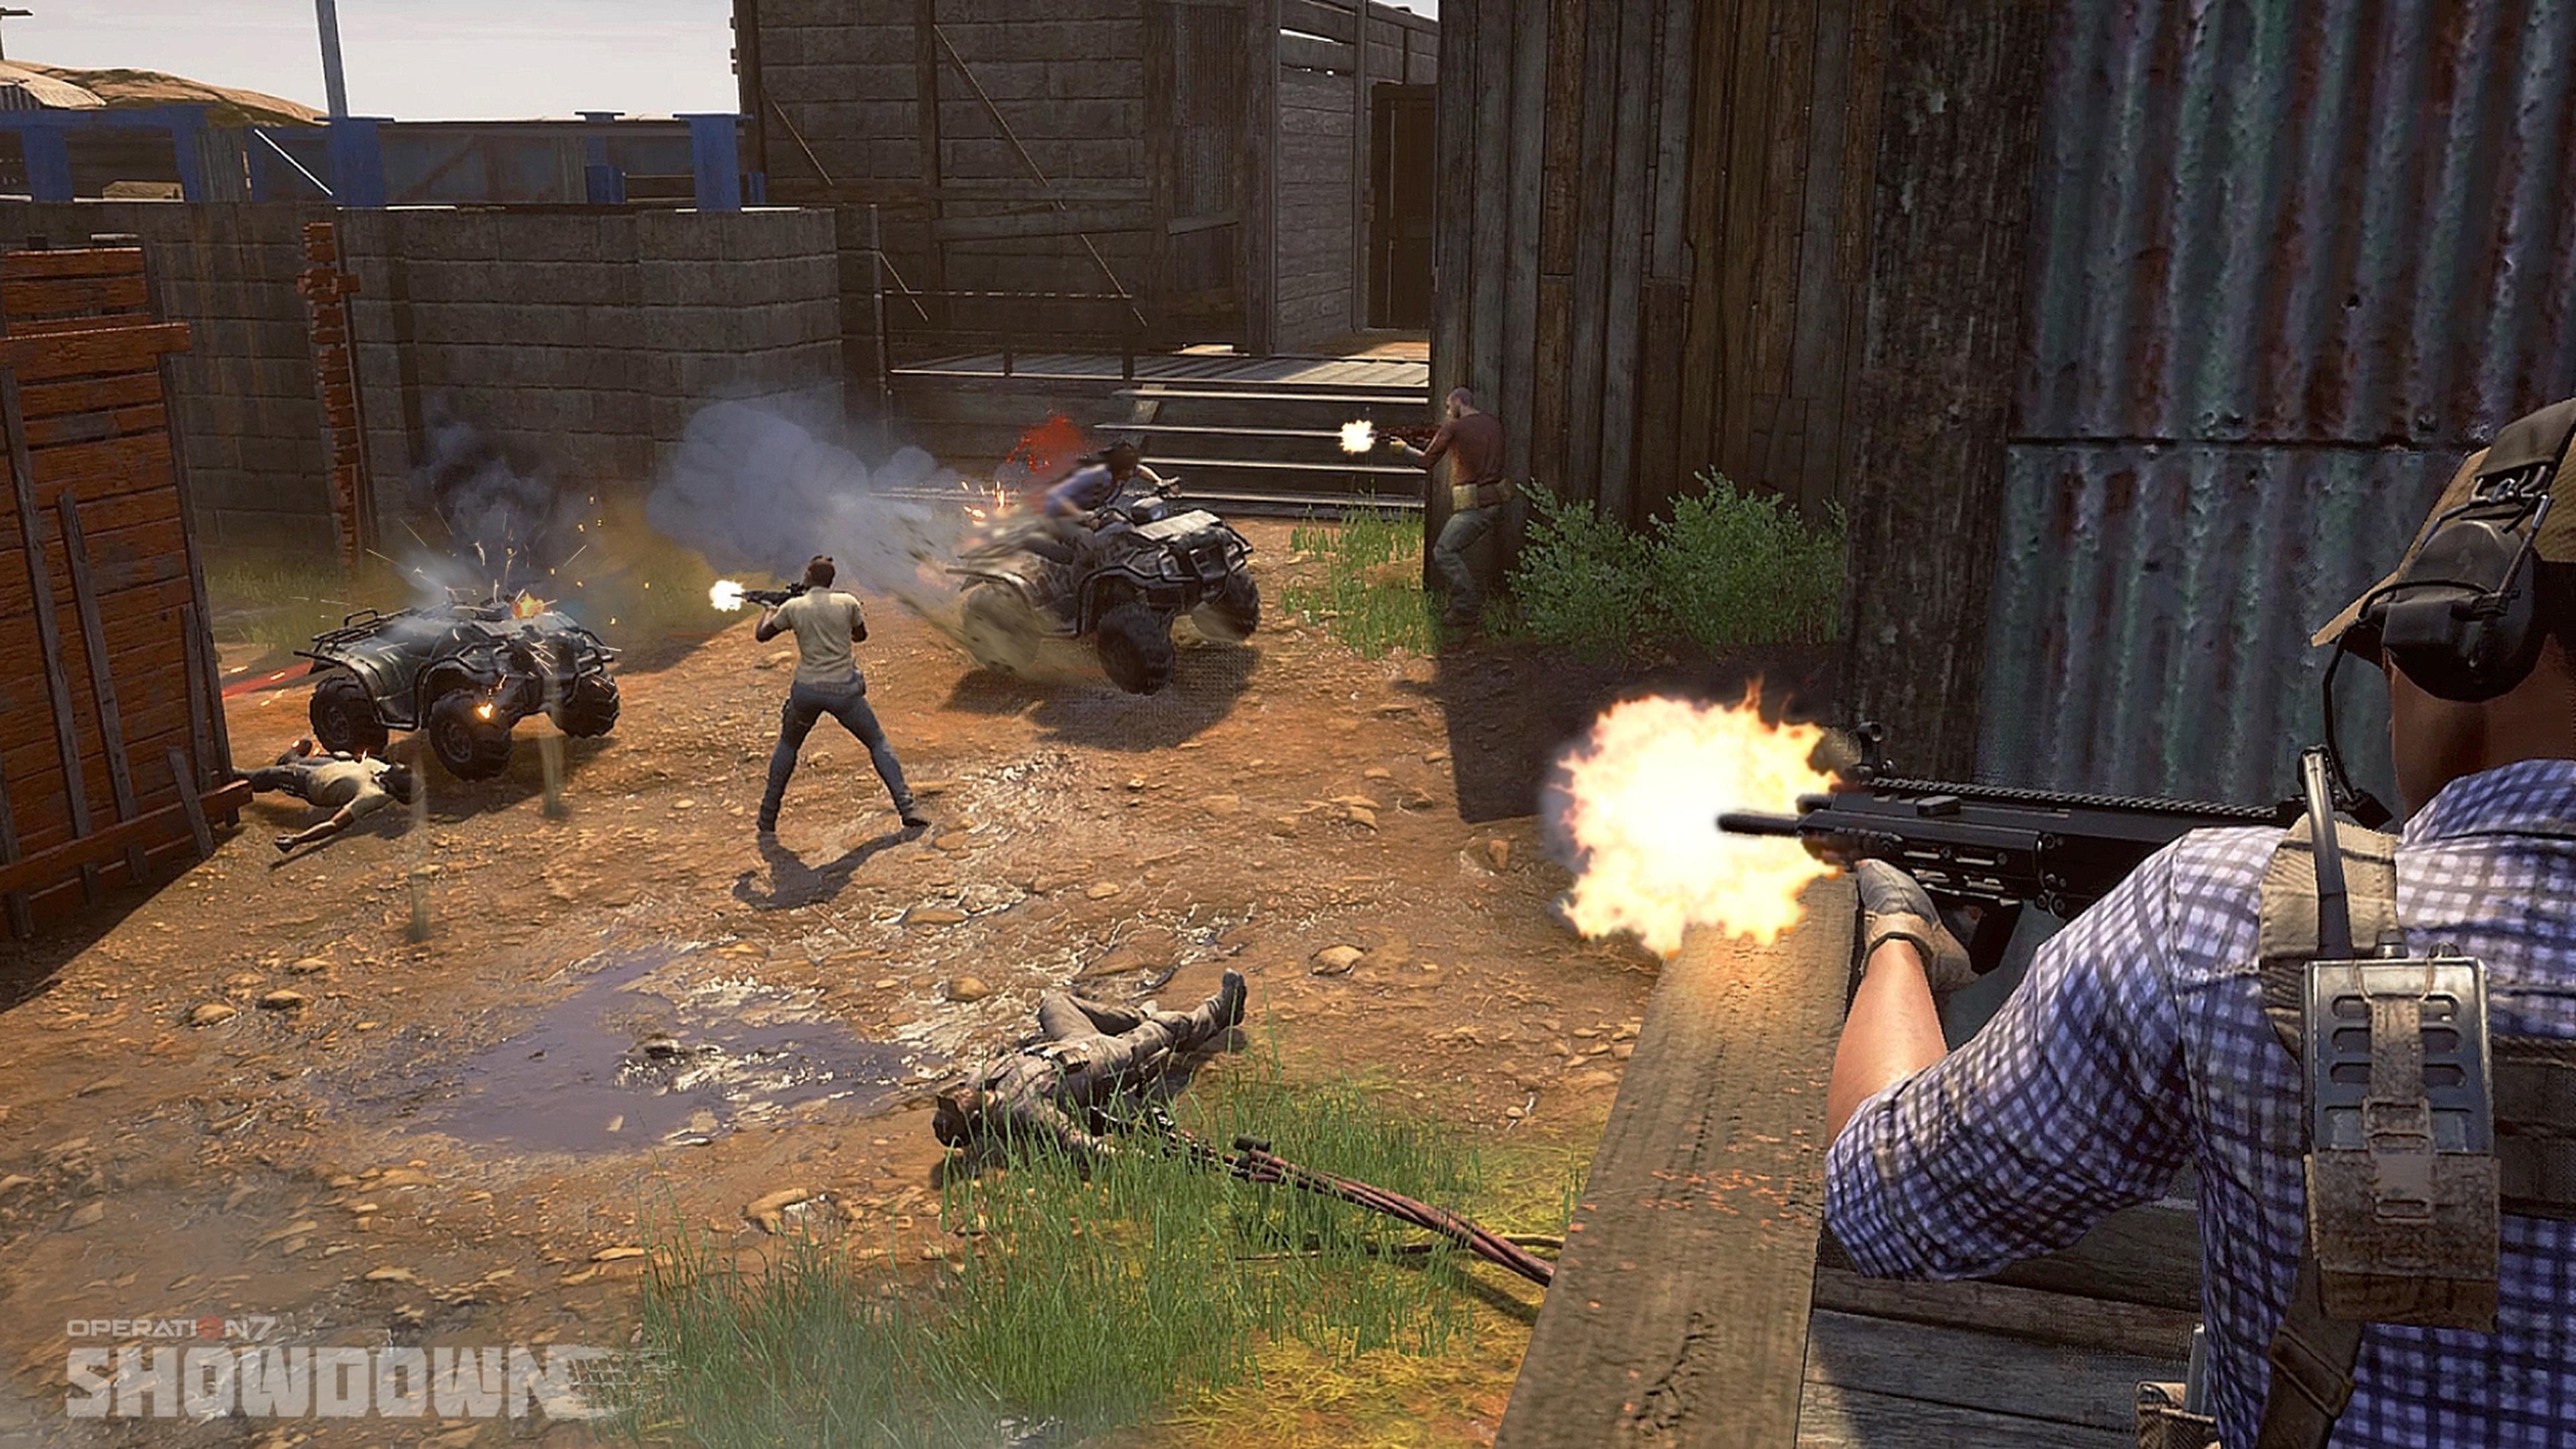 Jogo de tiro gratuito Operation7: Showdown está disponível para PS4 - PSX  Brasil